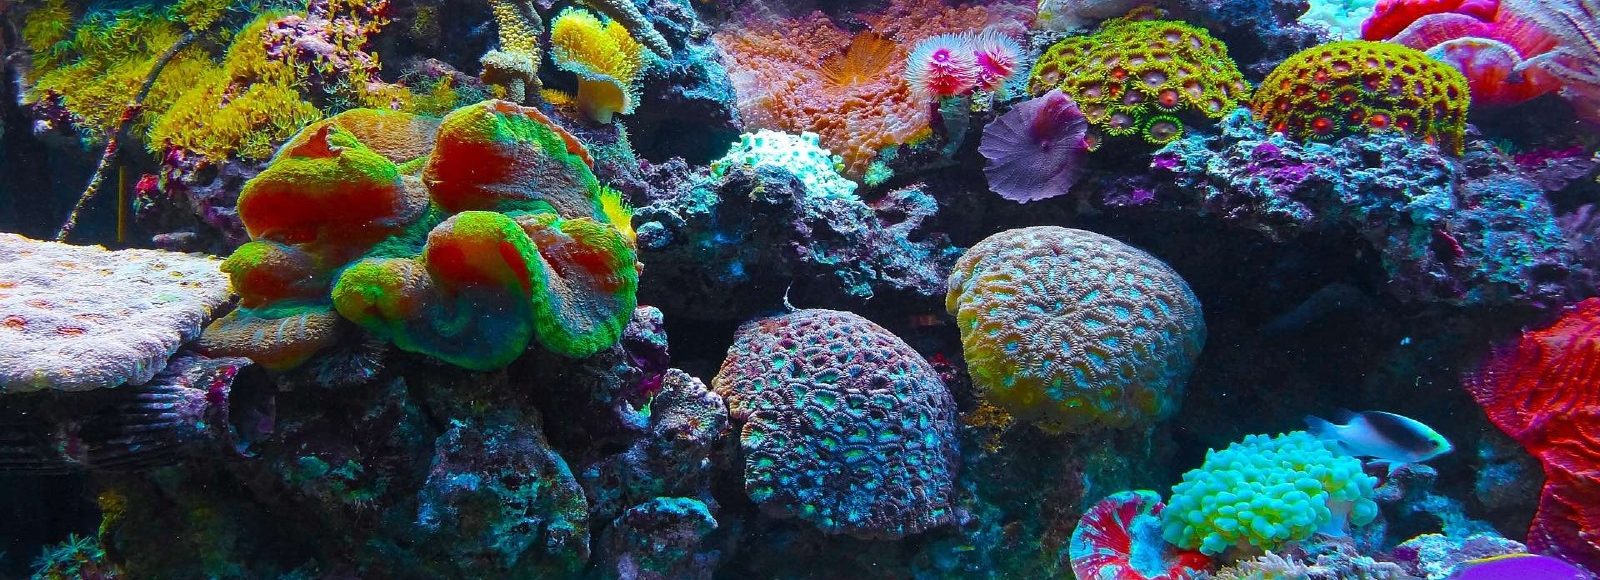 Malaysia-coral-reefs